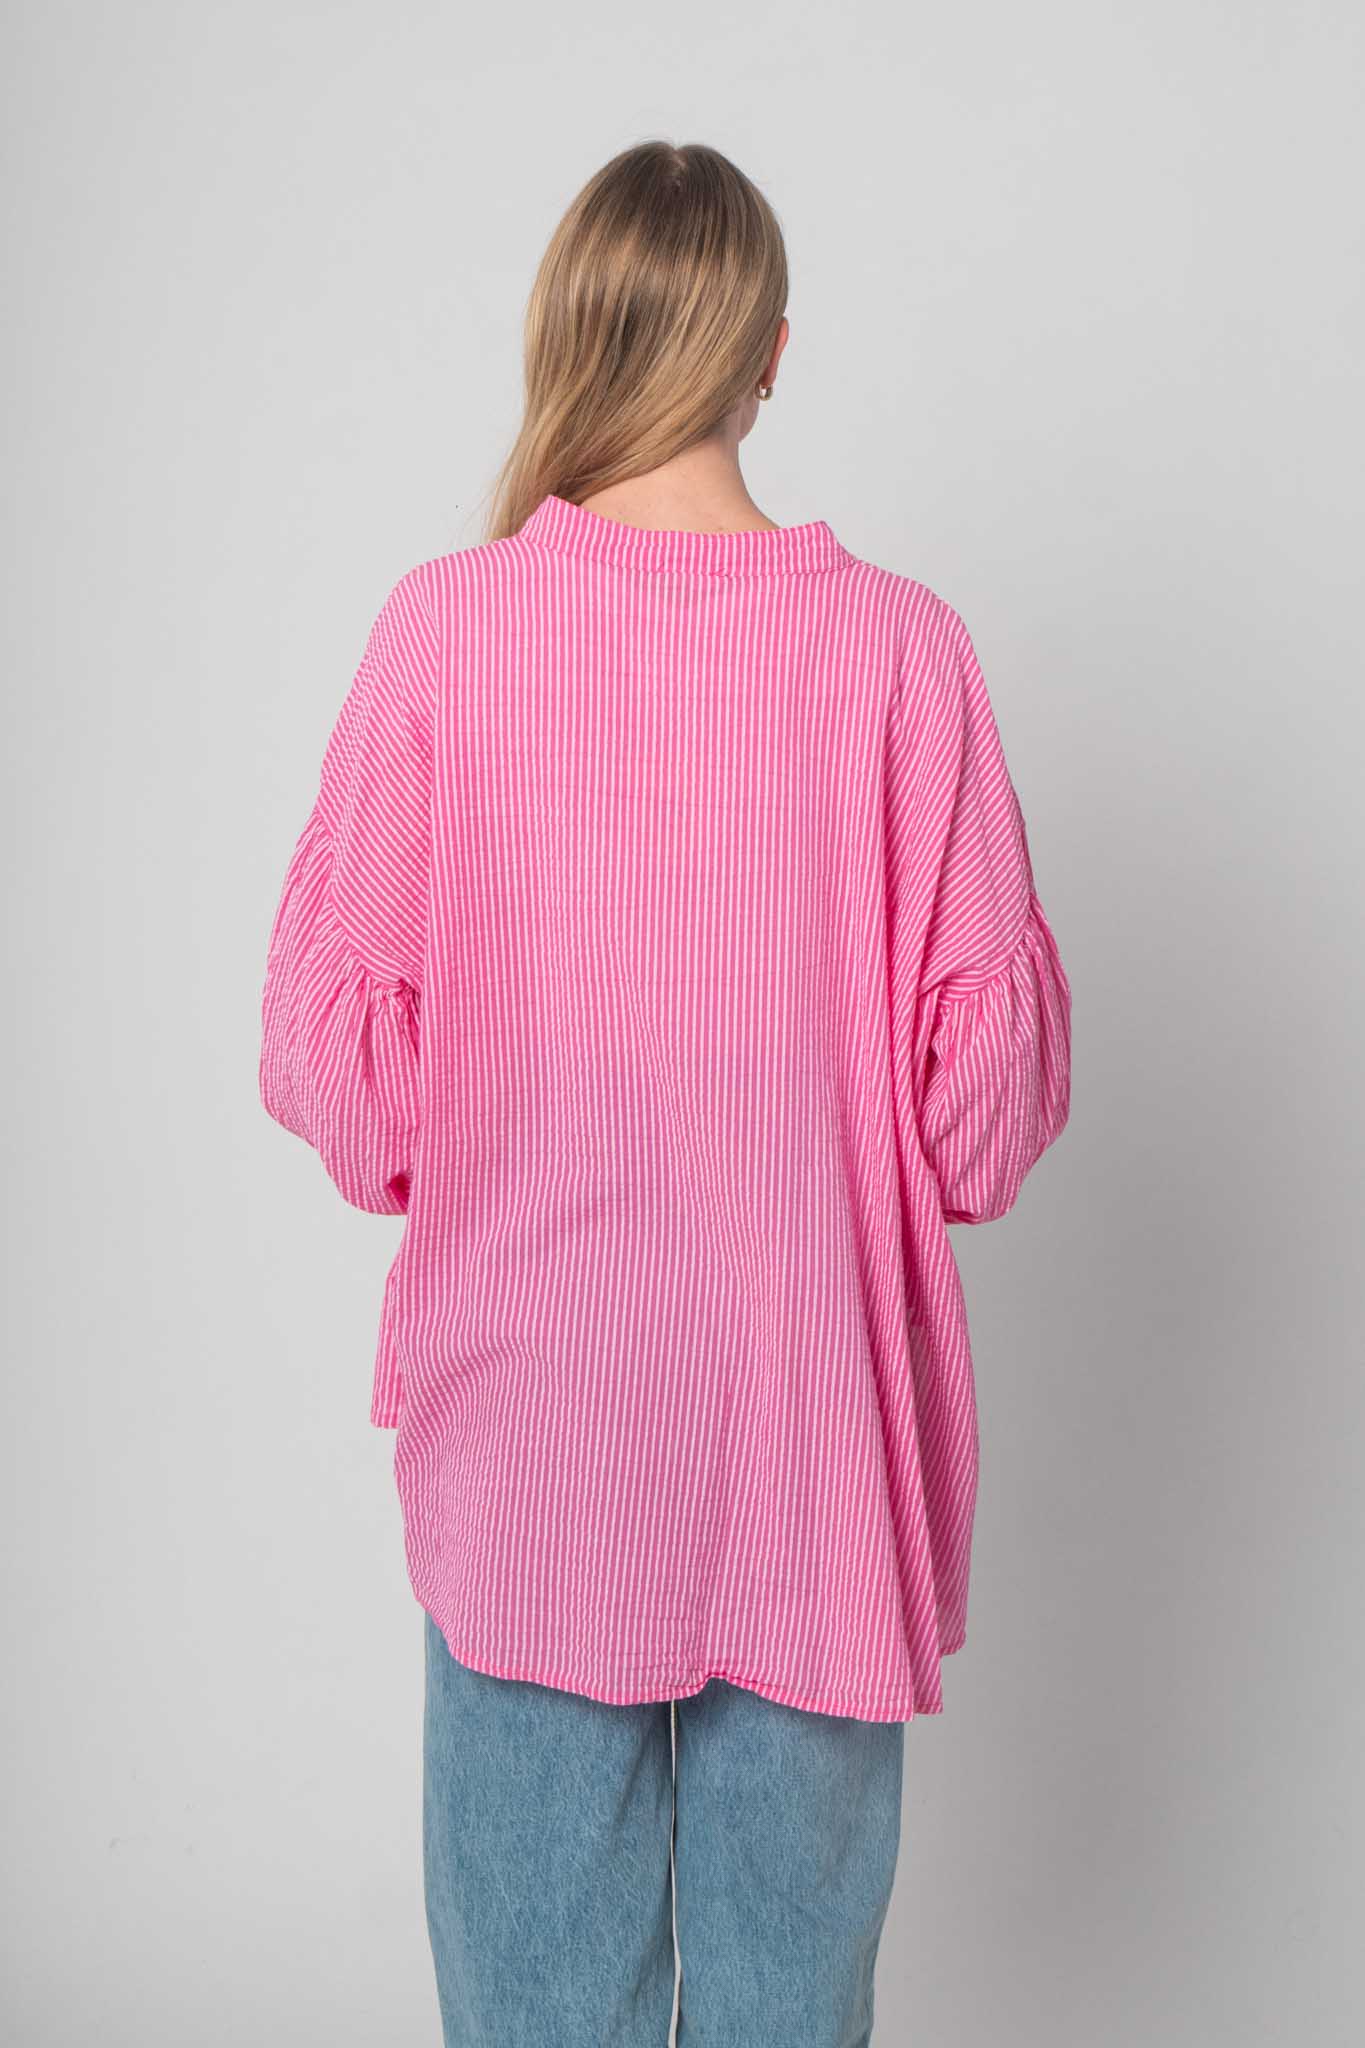 Musselin Bluse mit feinen Streifen - Pink/Weiß